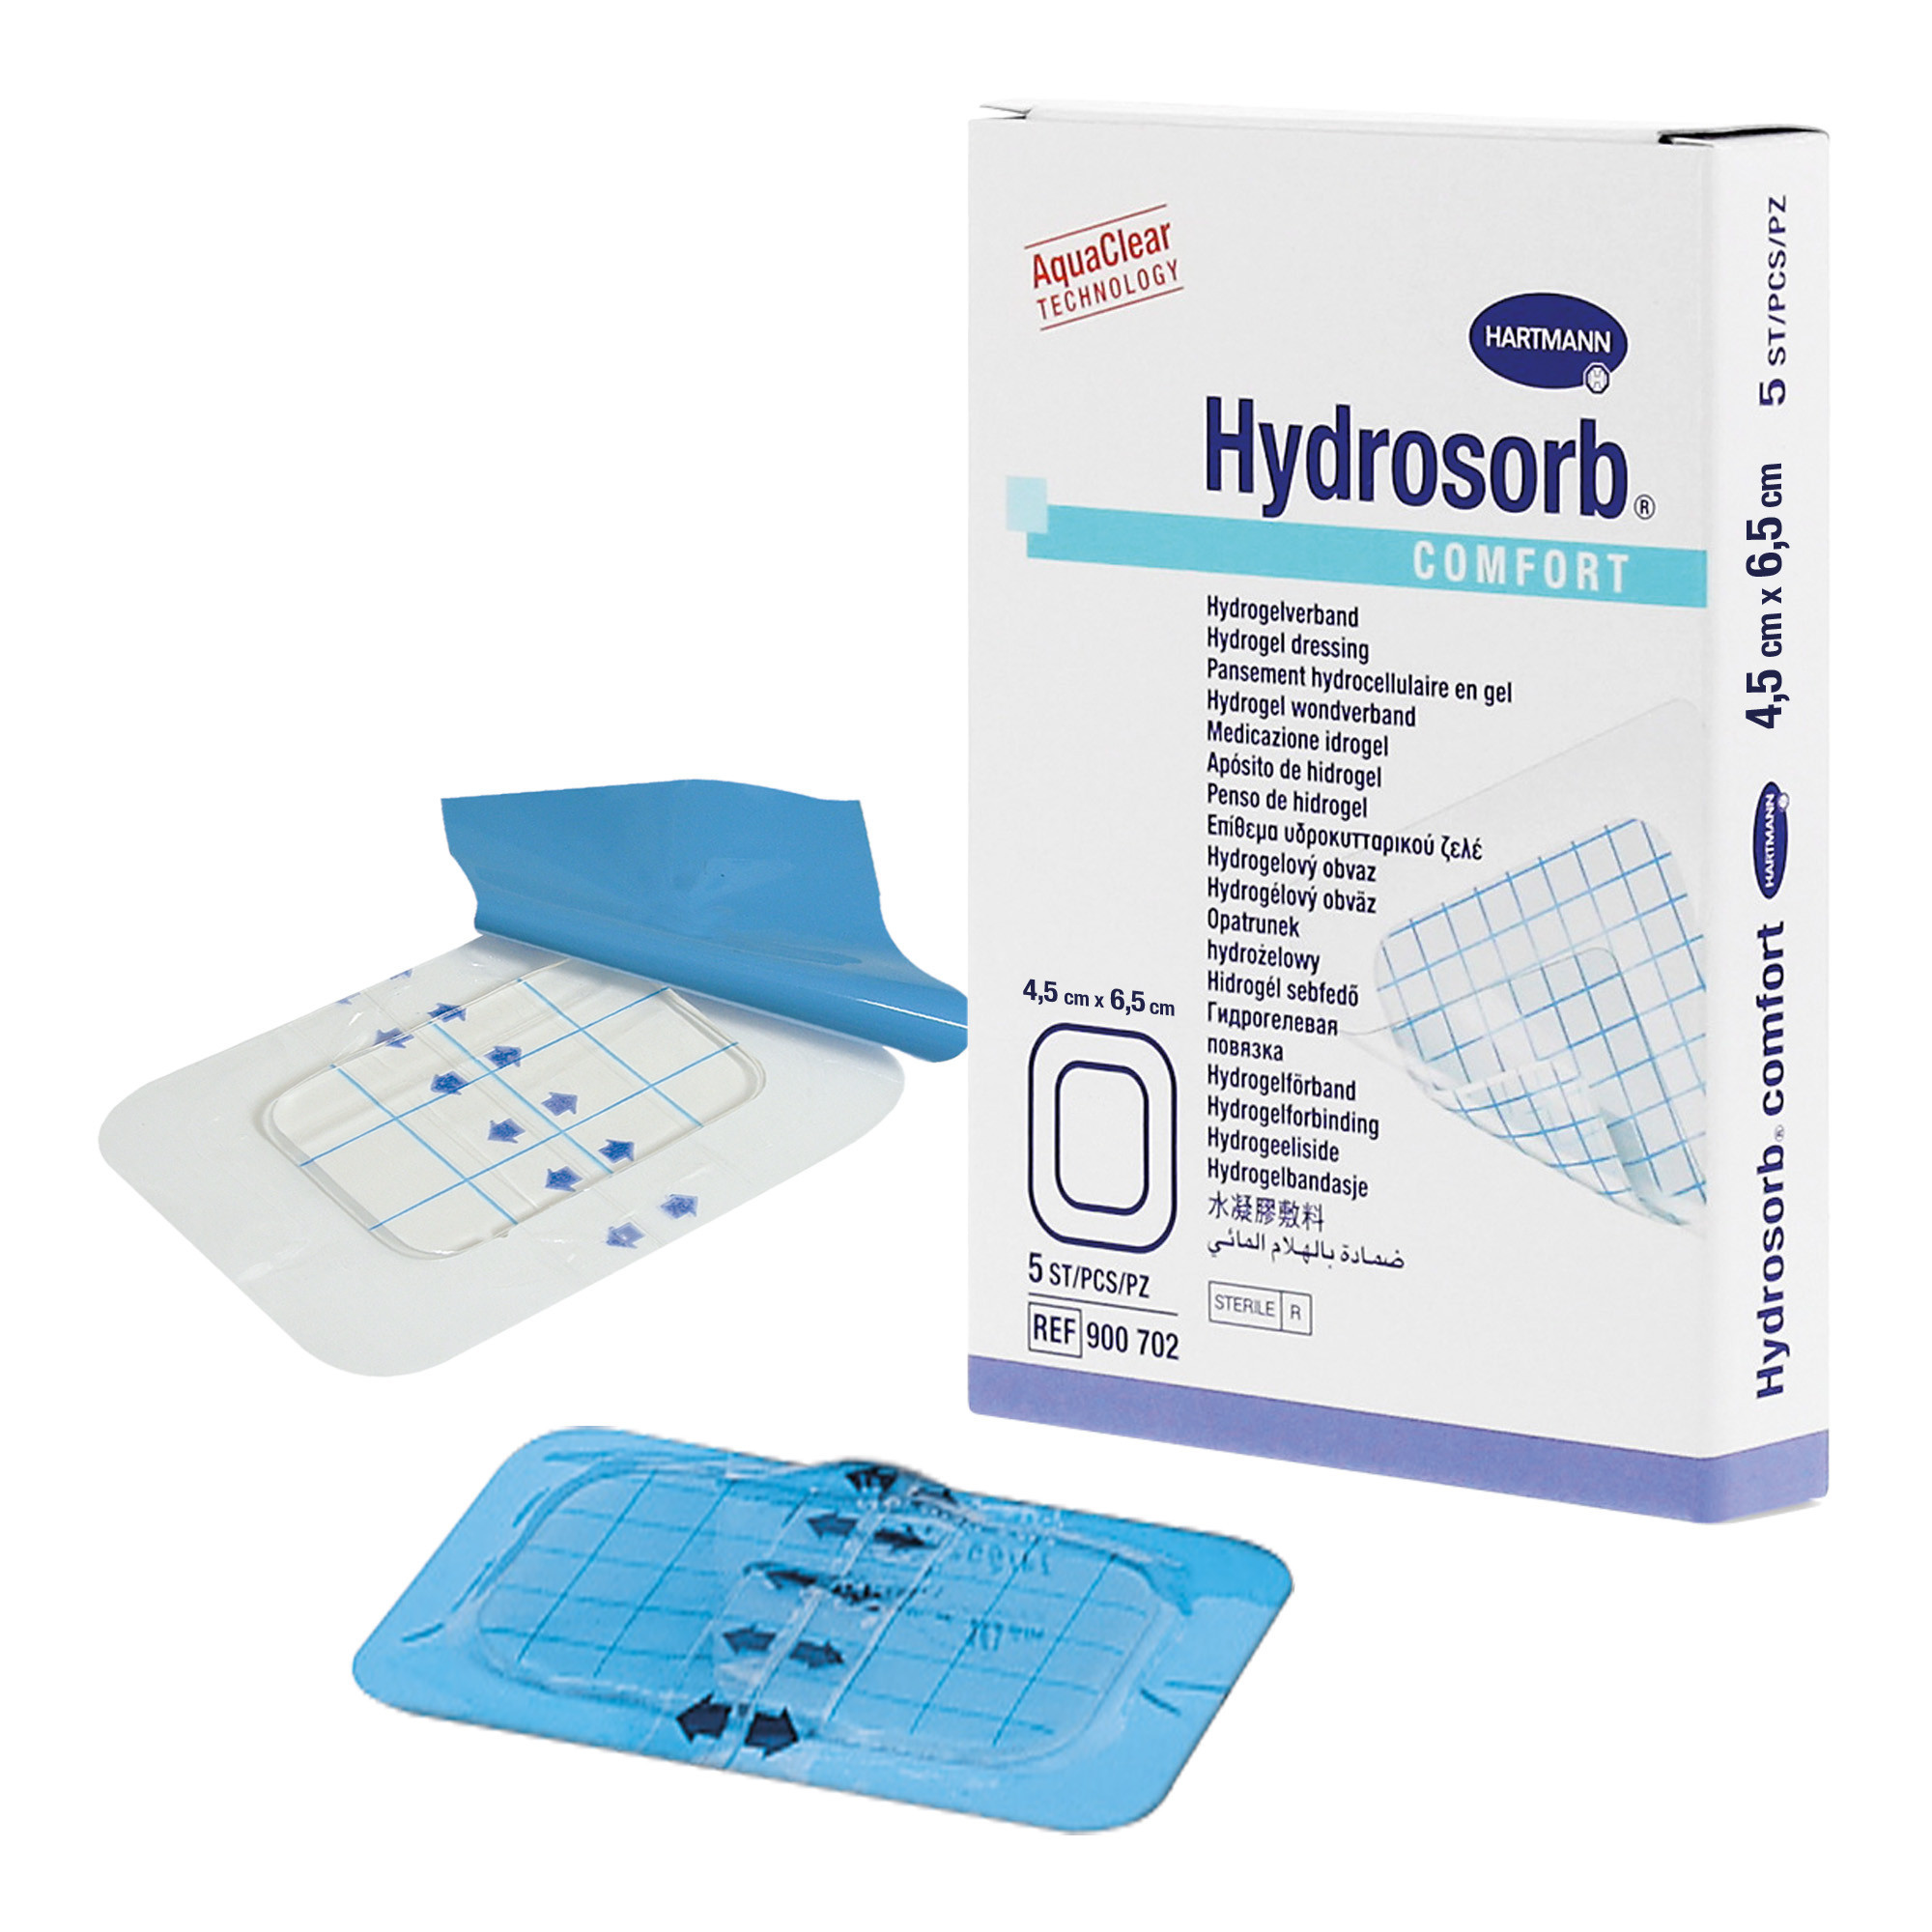 Hydrosorb Comfort - Hypoallergene transparente Wundauflage 4,5 x 6,5 cm 5 Stück